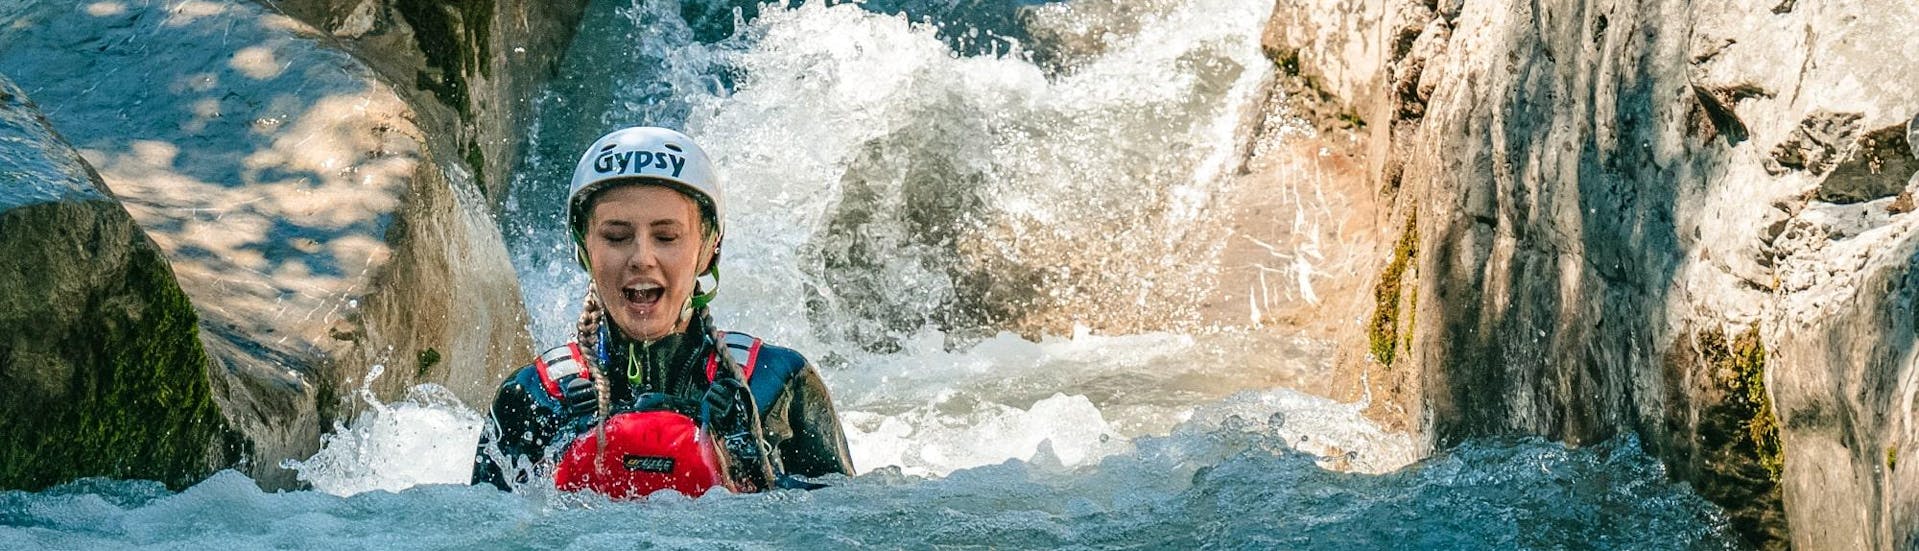 Immagine di una donna in acqua durante un'attività di canyoning a Saxeten.